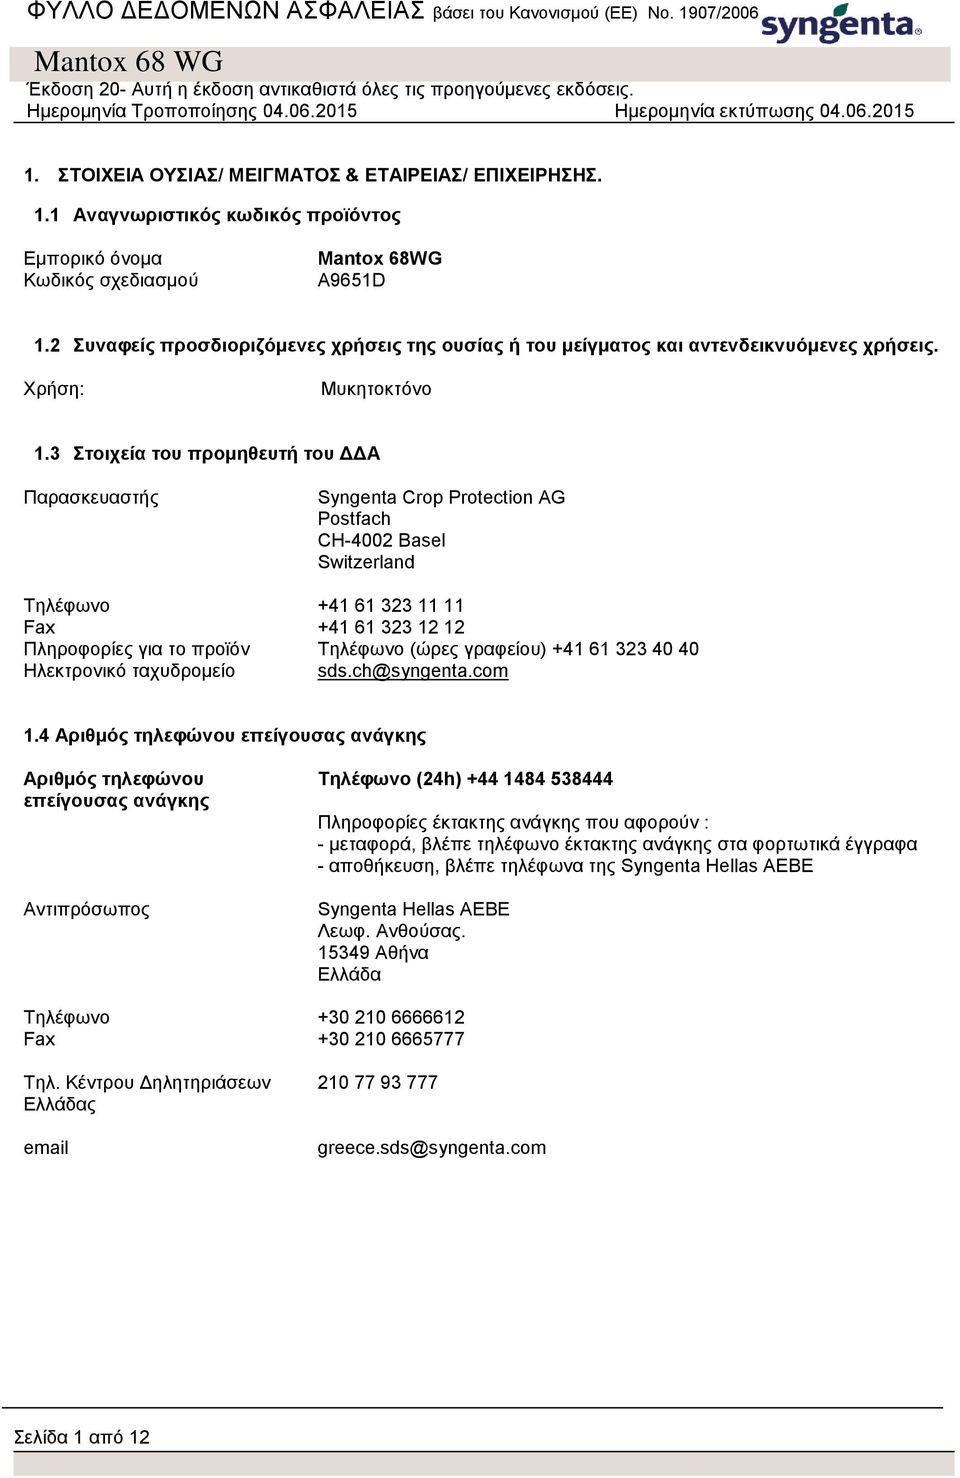 3 Στοιχεία του προμηθευτή του ΔΔΑ Παρασκευαστής Syngenta Crop Protection AG Postfach CH-4002 Basel Switzerland Τηλέφωνο +41 61 323 11 11 Fax +41 61 323 12 12 Πληροφορίες για το προϊόν Τηλέφωνο (ώρες